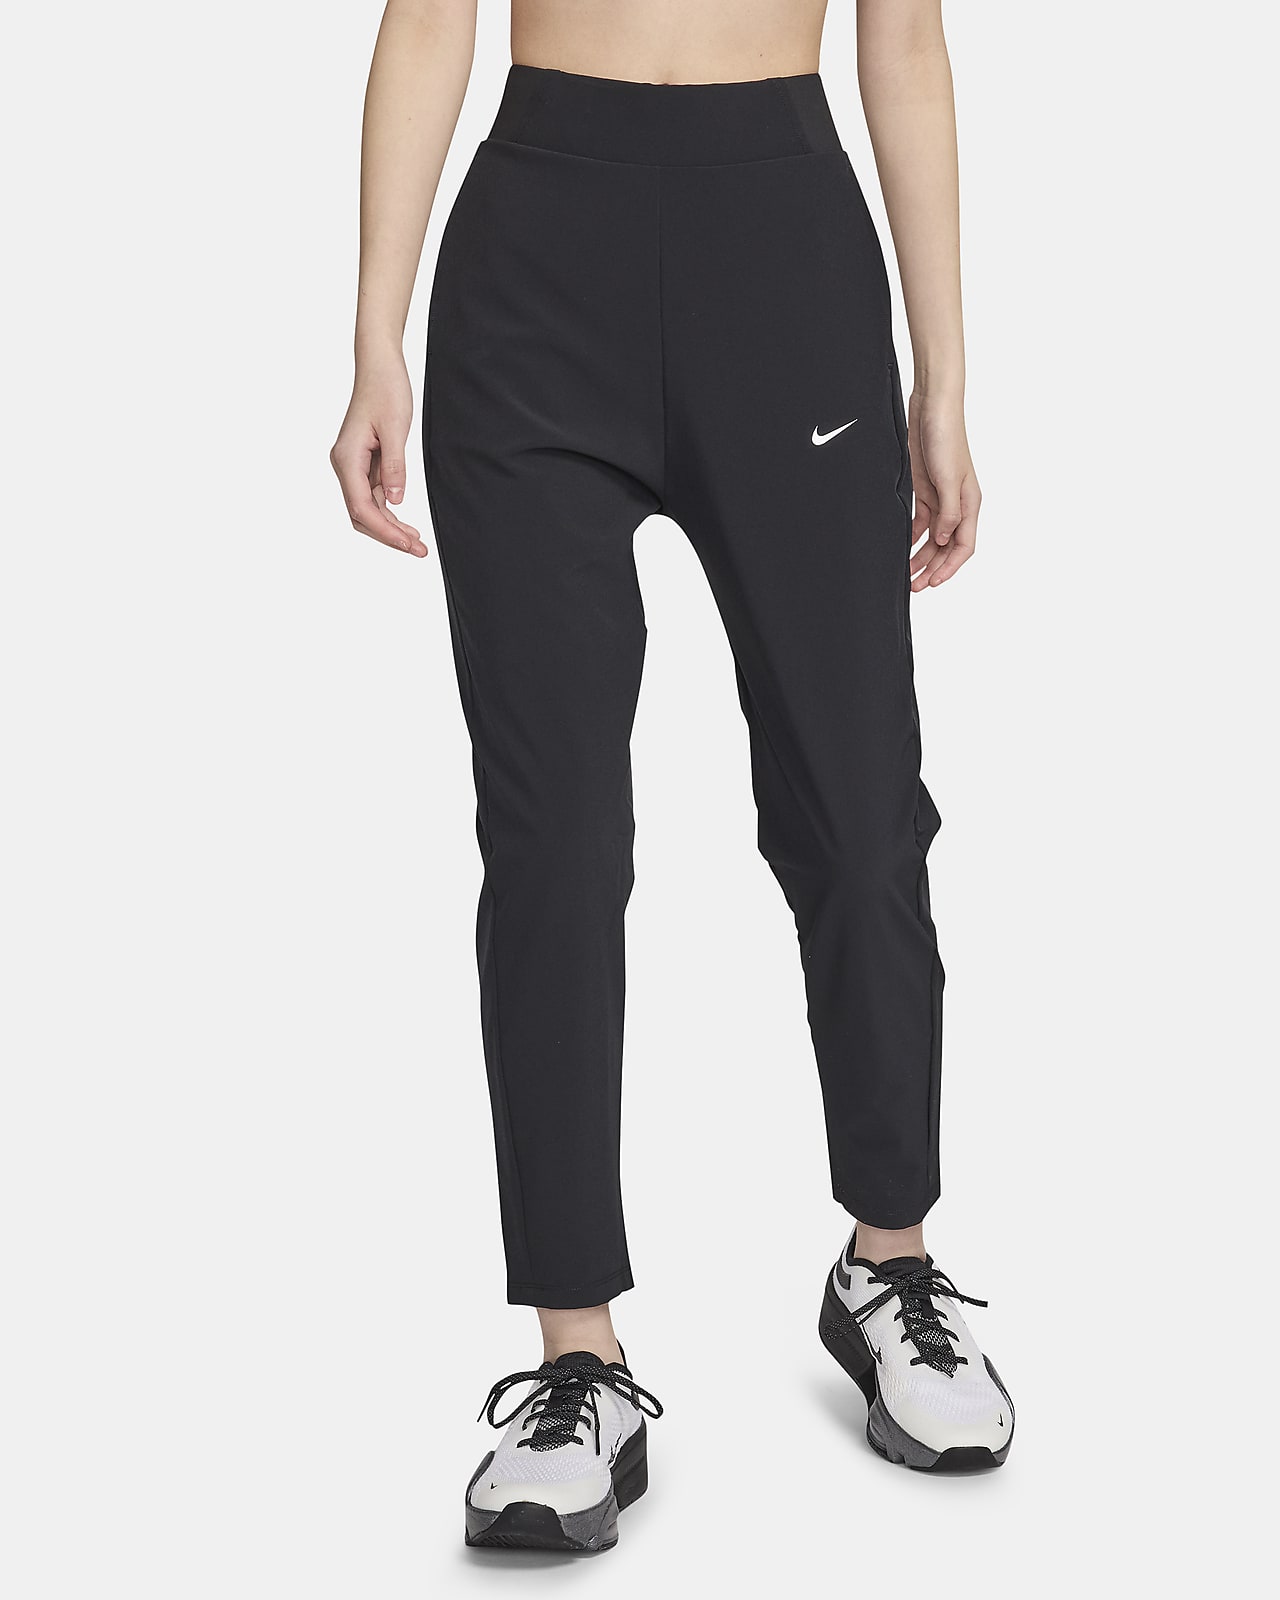 กางเกงเทรนนิ่งขายาวเอวปานกลางผู้หญิง Nike Dri-FIT Bliss Victory